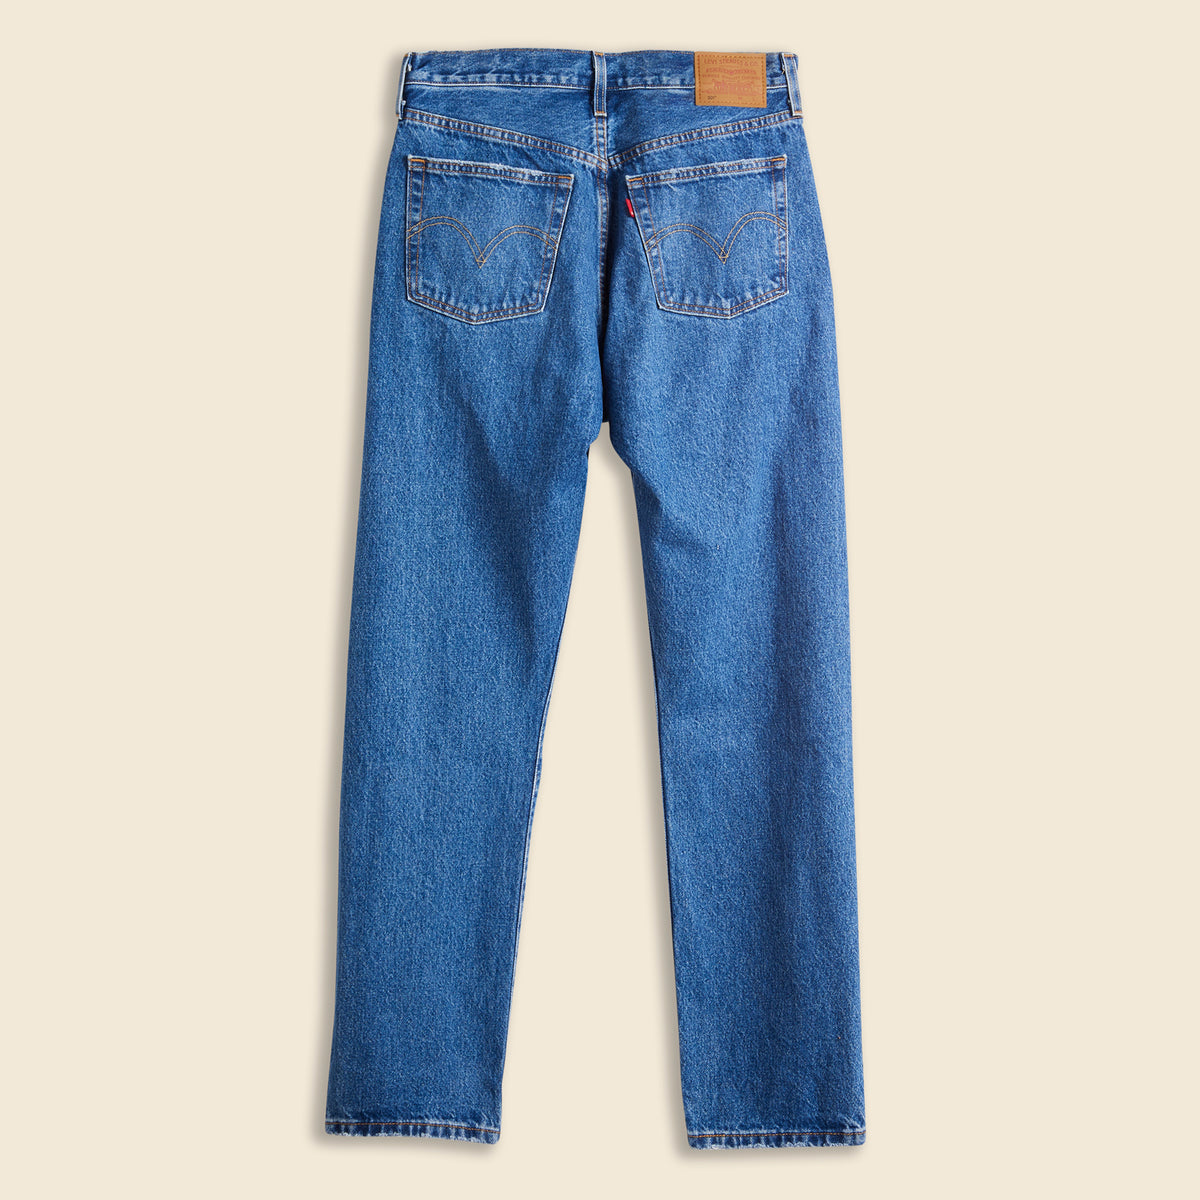 Levi's Women's Premium 501 Original Fit Jeans, Luxor Last, 31